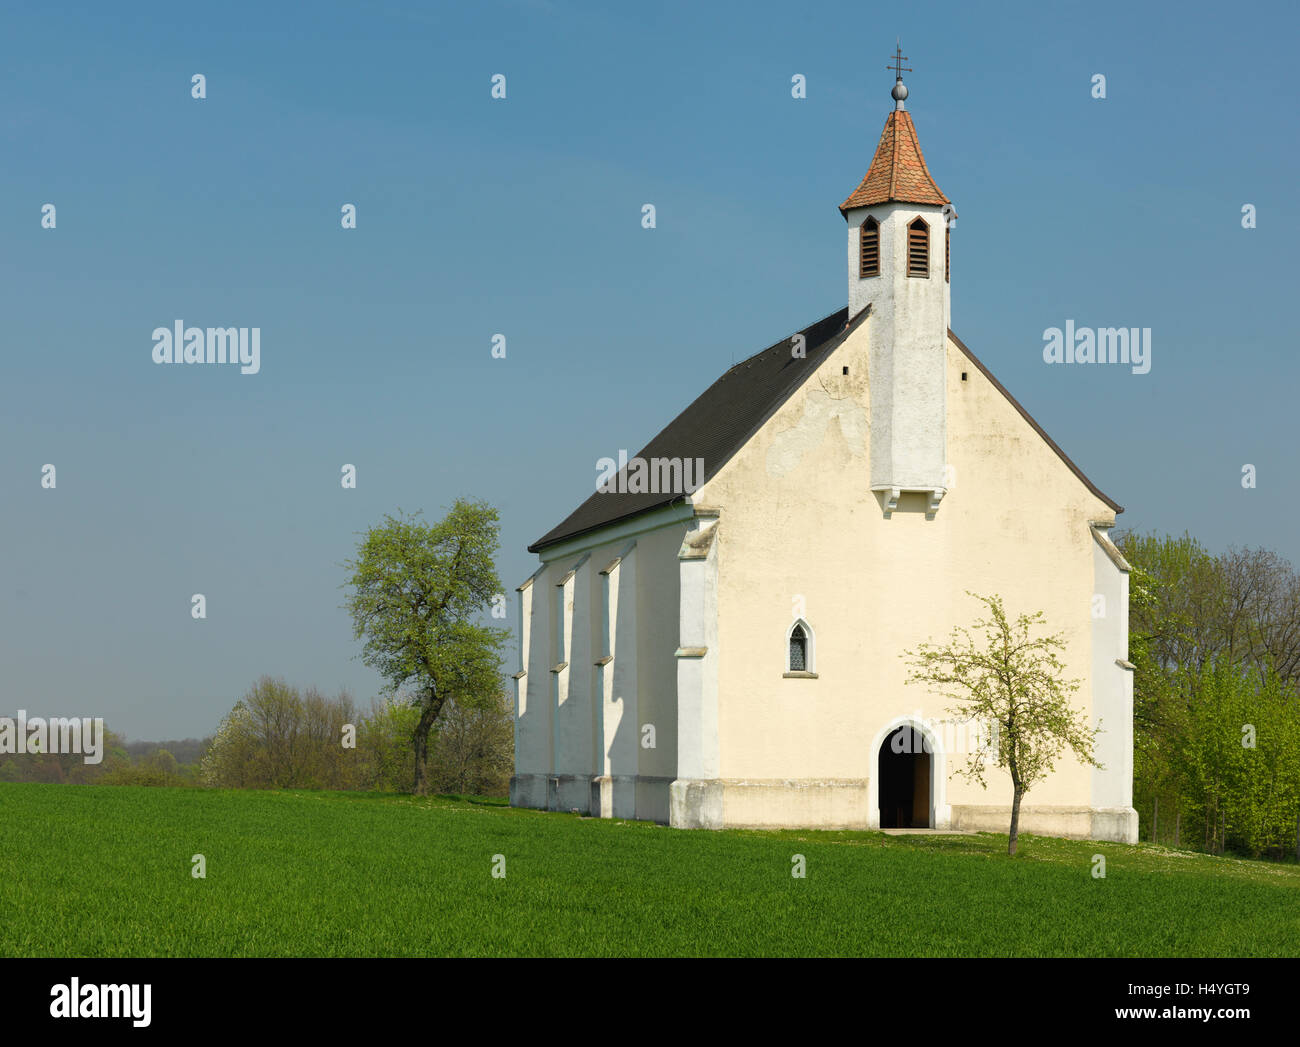 Tochtergesellschaft Kirche in Wallmersdorf in der Nähe von Hausmening und Kroellendorf, Region Mostviertel, untere Austria, Österreich, Europa Stockfoto